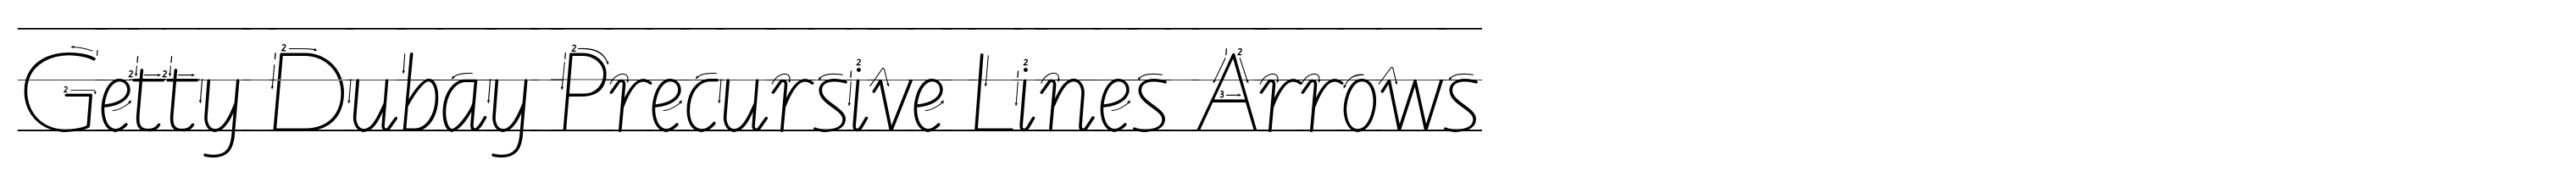 Getty Dubay Precursive Lines Arrows